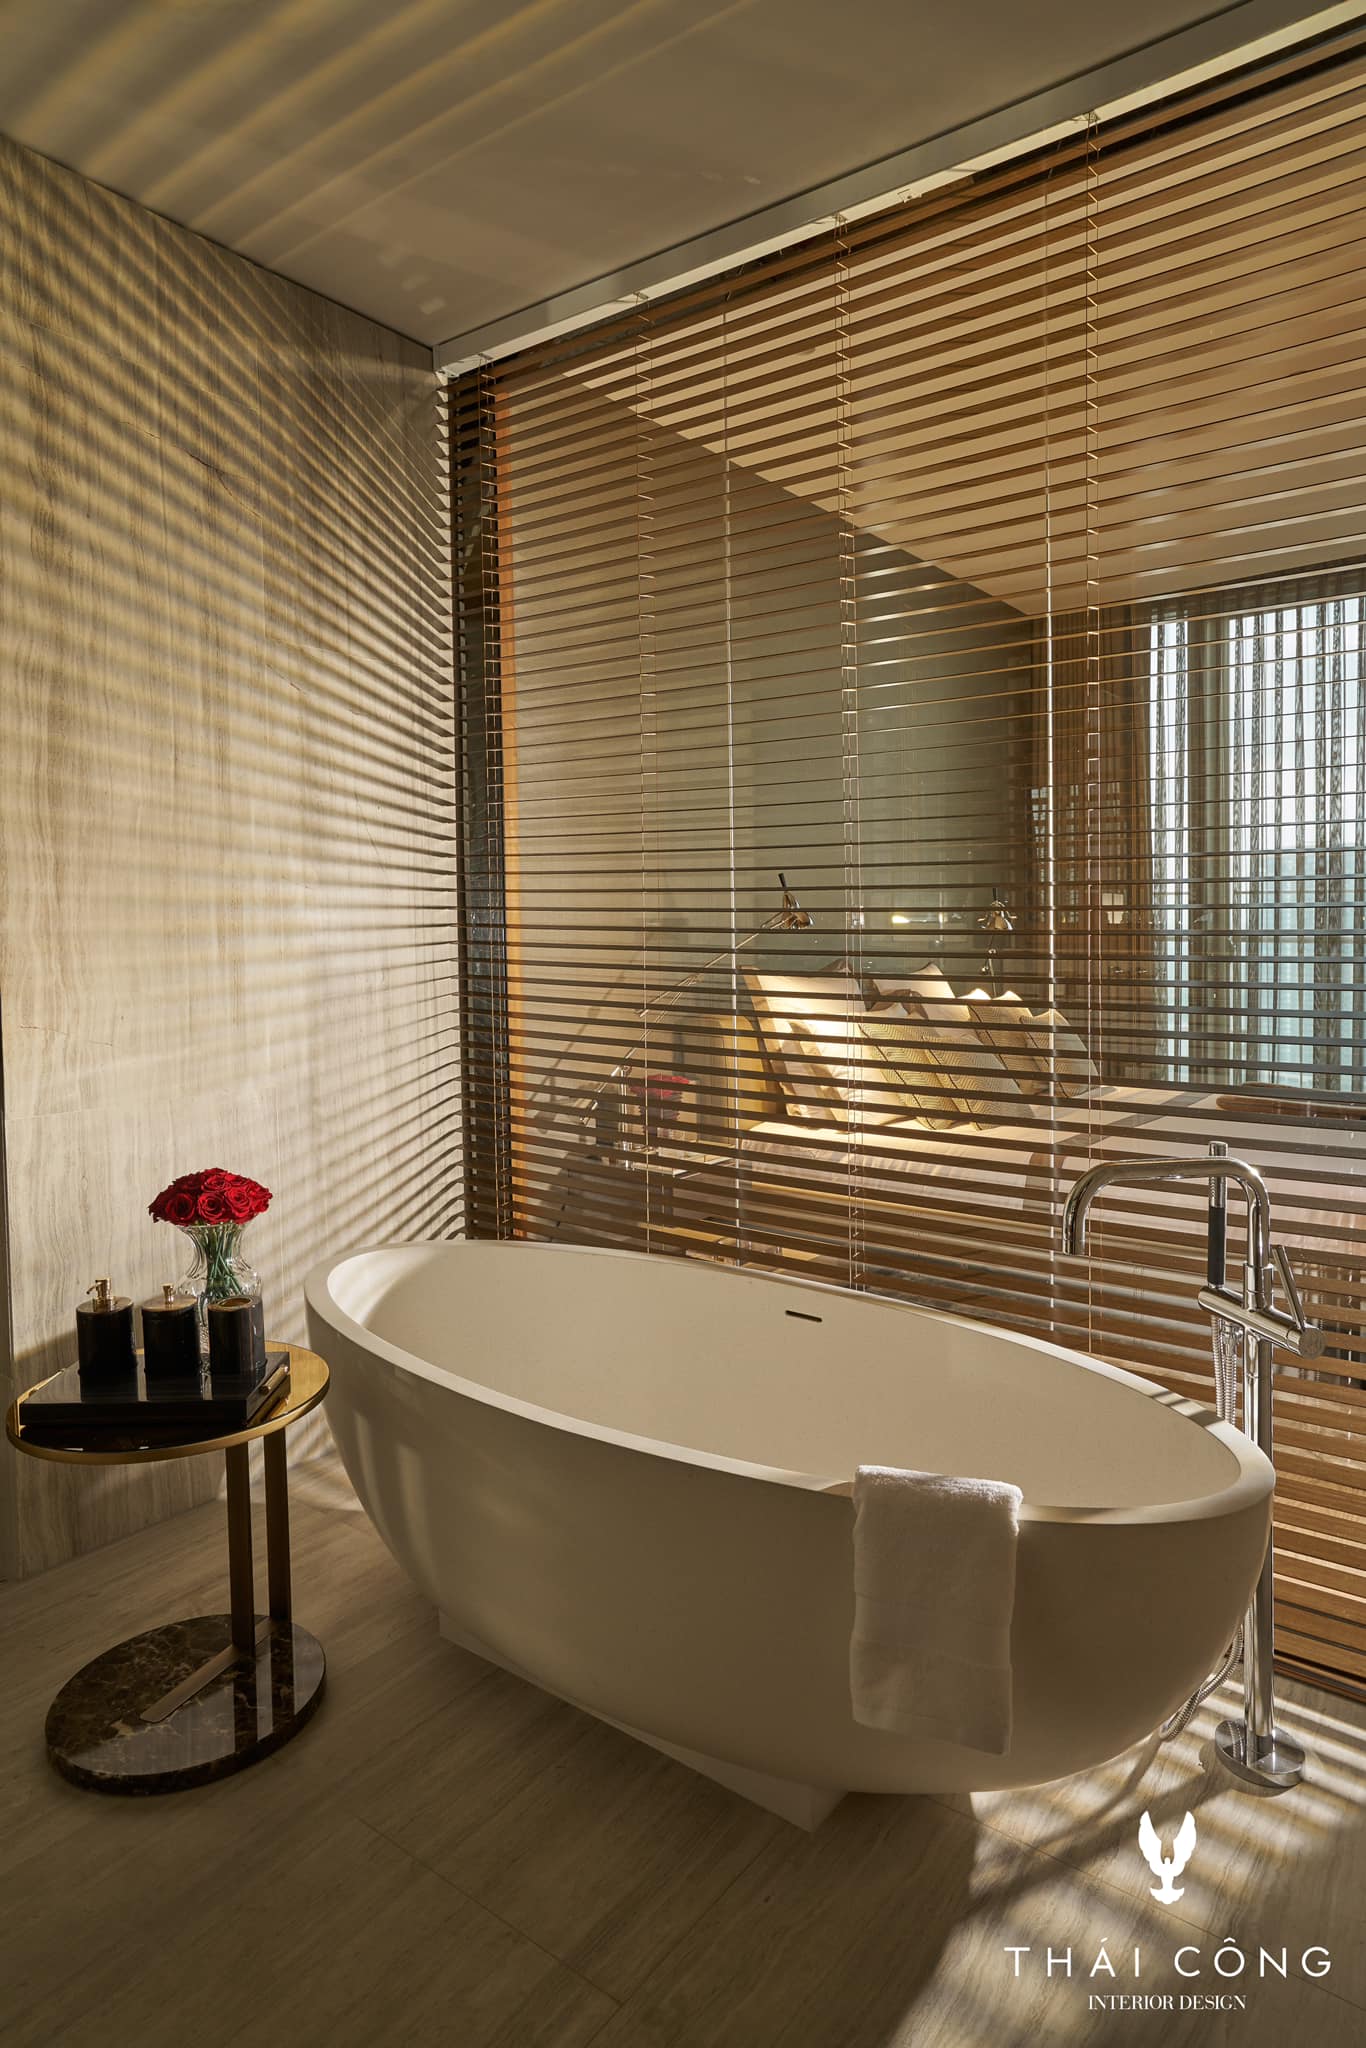 Thái Công khoe phòng tắm kết nối trực tiếp với phòng ngủ sang như khách sạn, nhưng dùng mới thấy cả tá sự bất tiện - Ảnh 11.